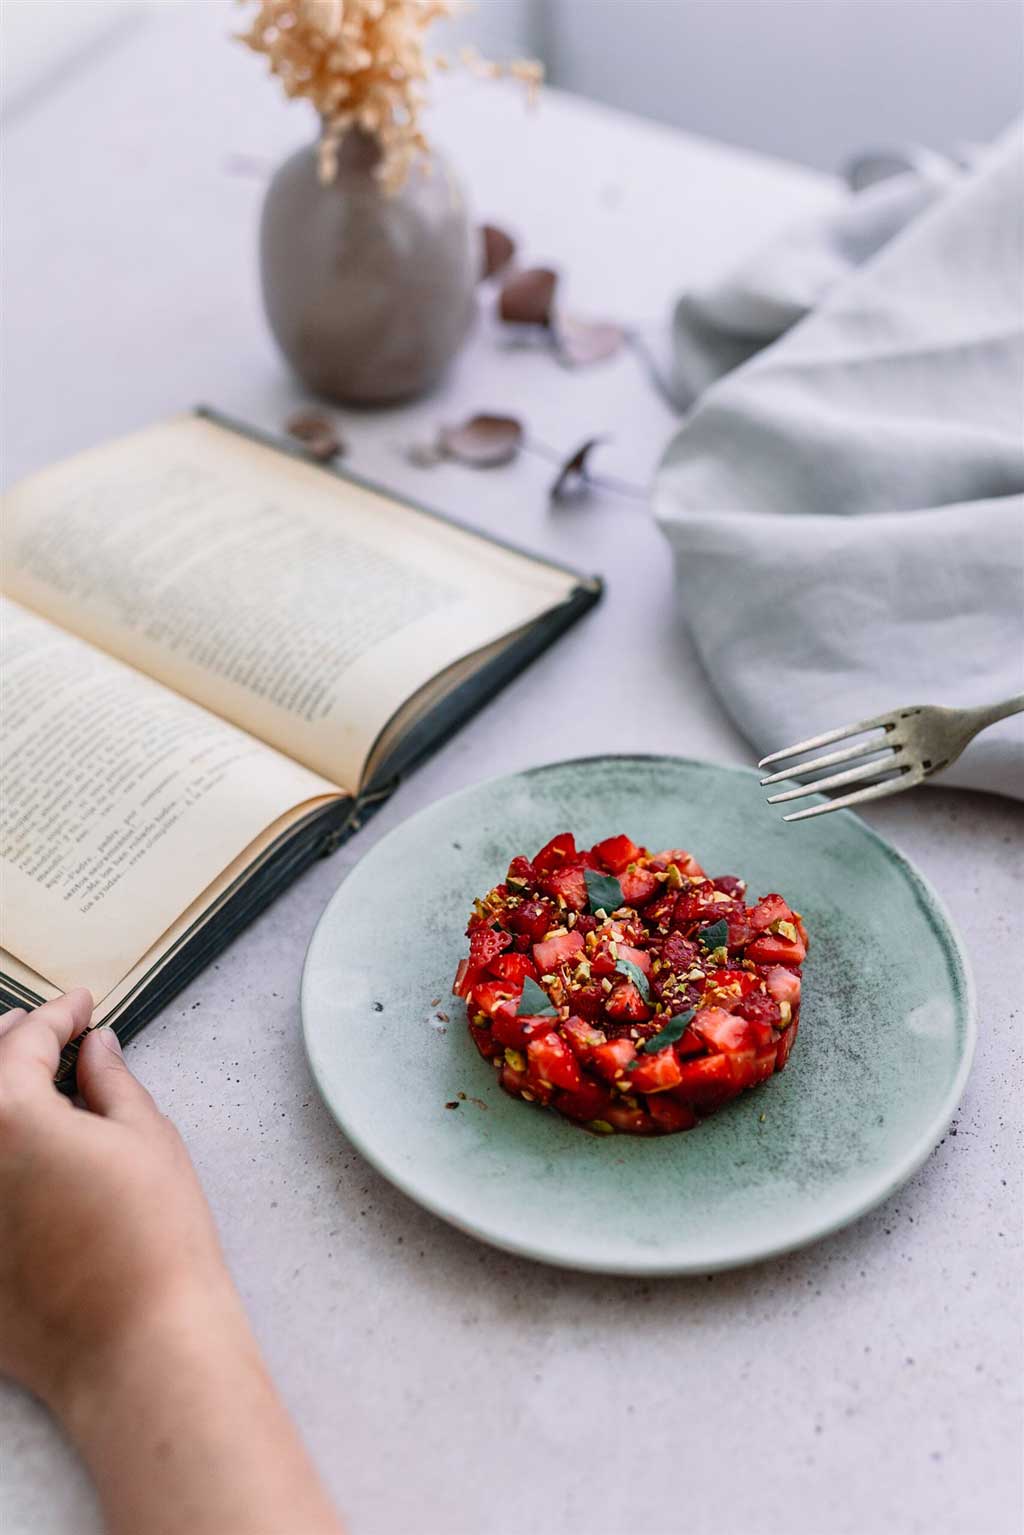 Tartar de tomate Monterosa con fresas. en la imagen una persona lo disfruta mientras lee un libro. Tartar en u plato elegante.